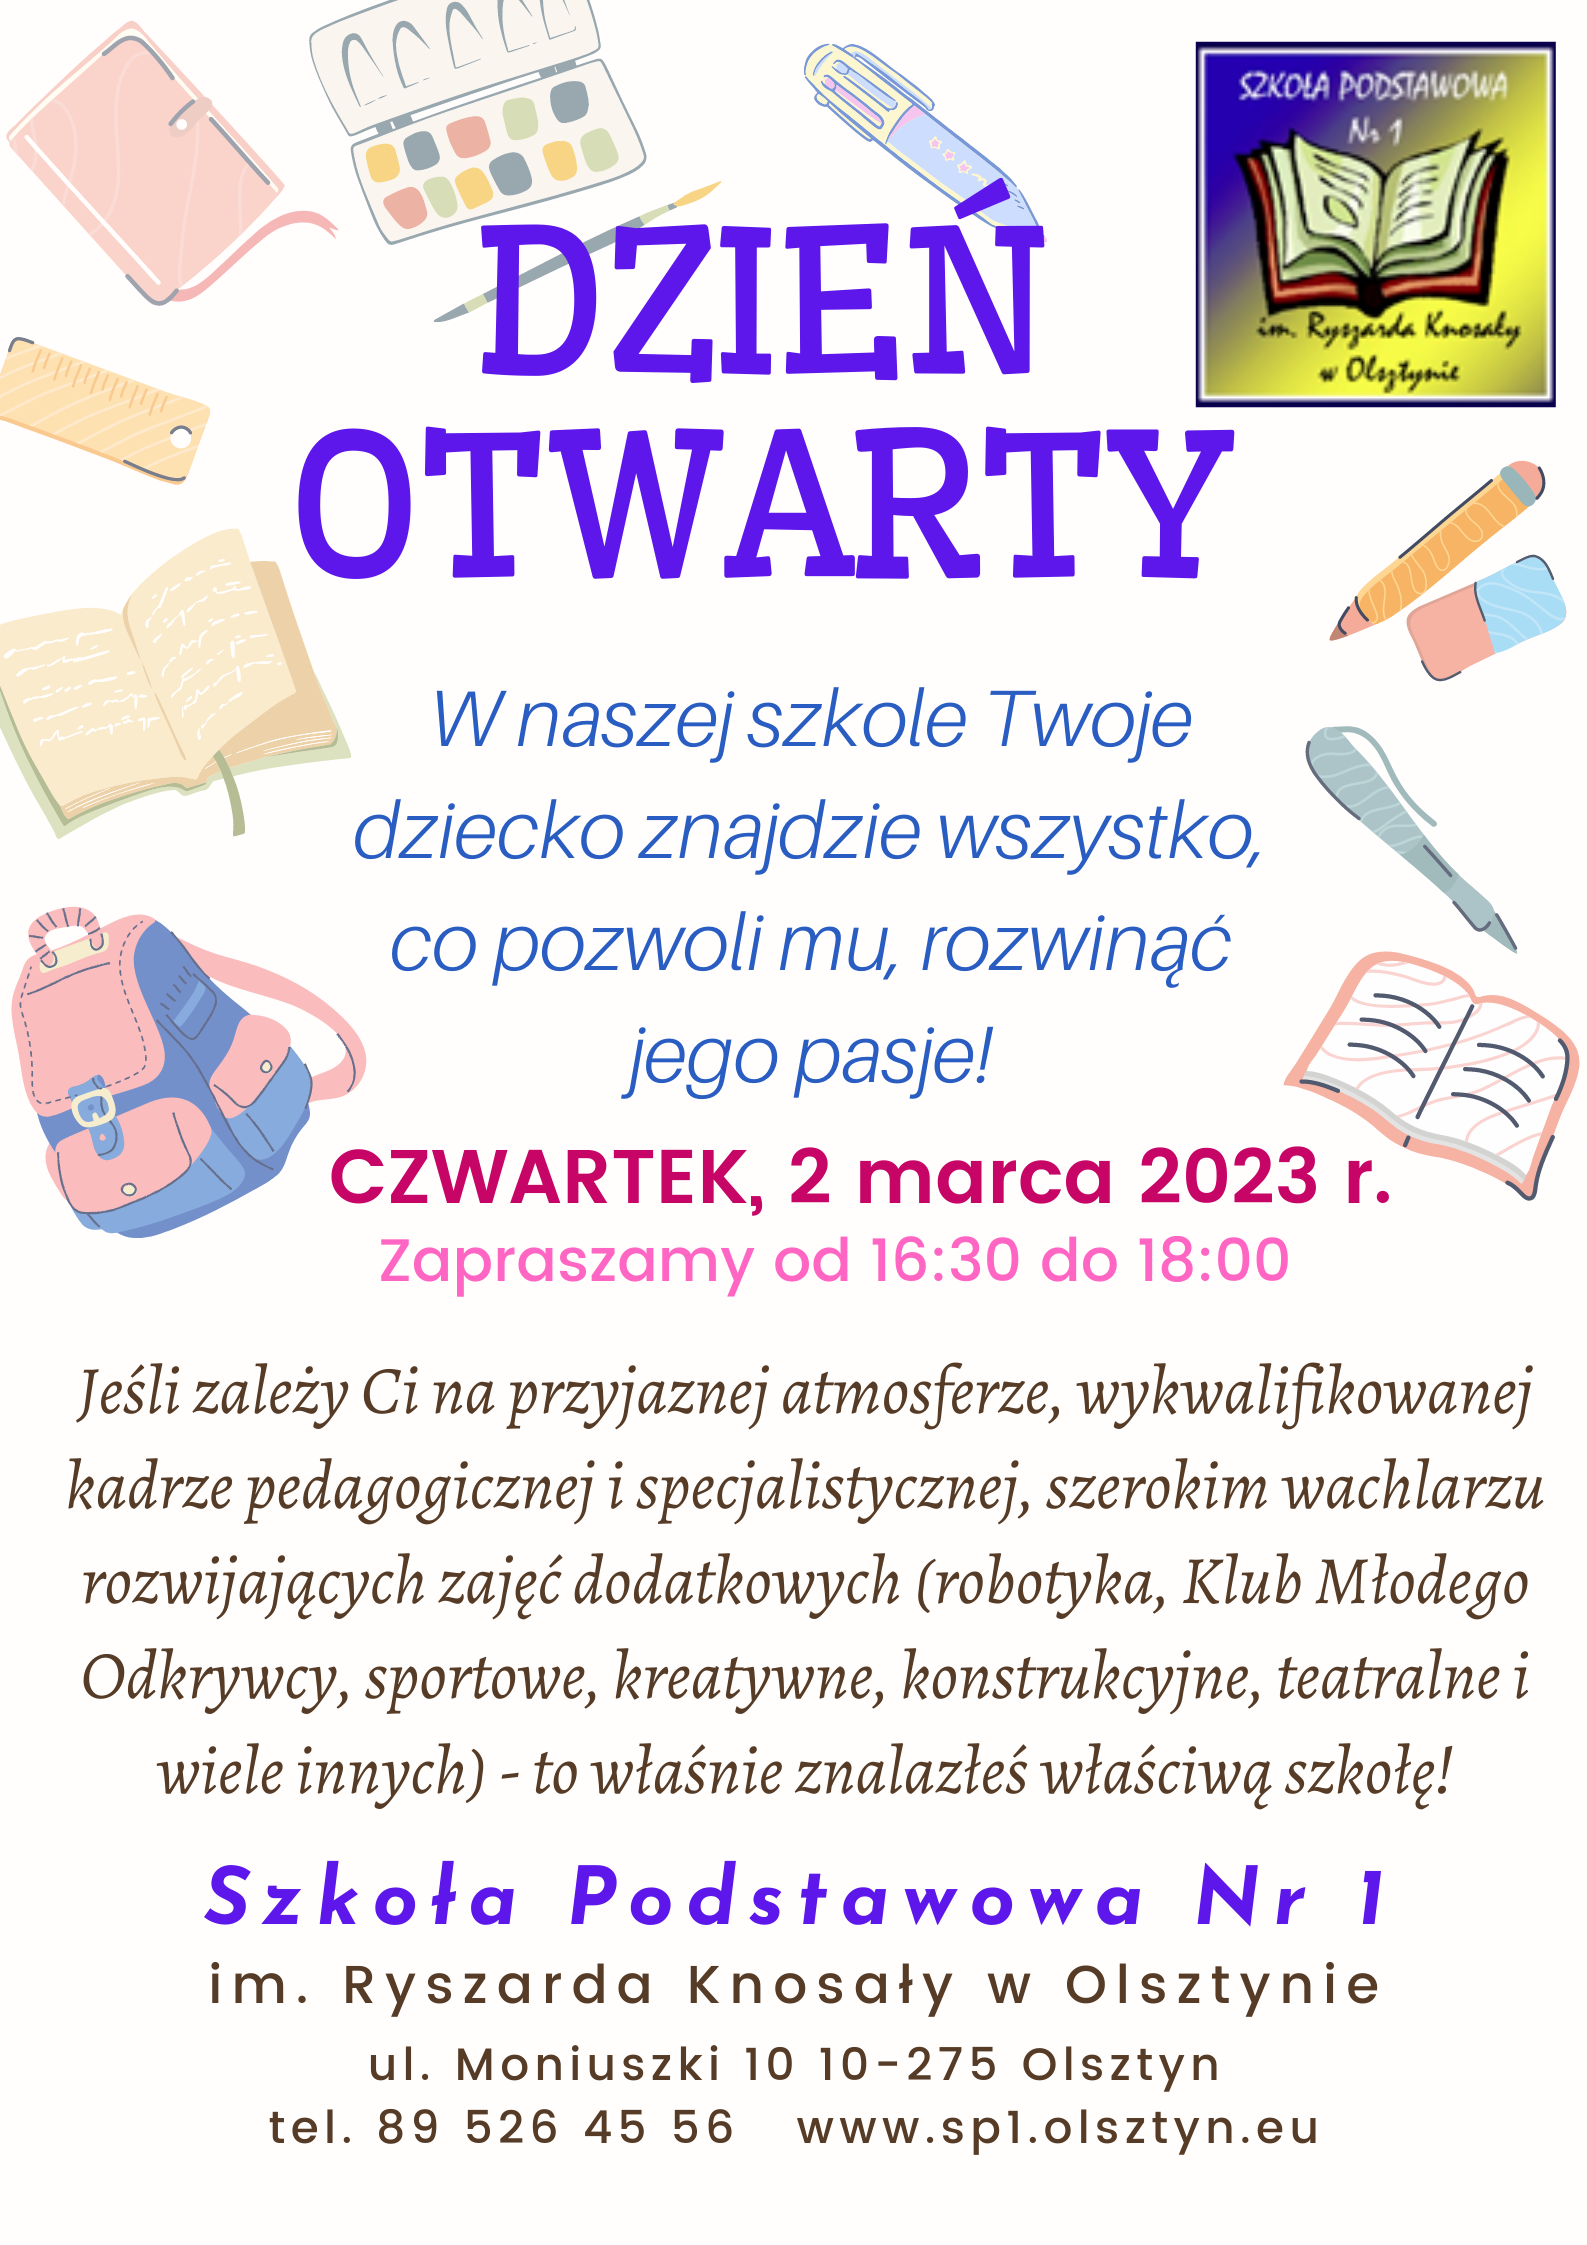 CZWARTEK, 2 marca 2023 r. Zapraszamy od 16:30 do 18:00 na Dzień Otwarty szkoły.